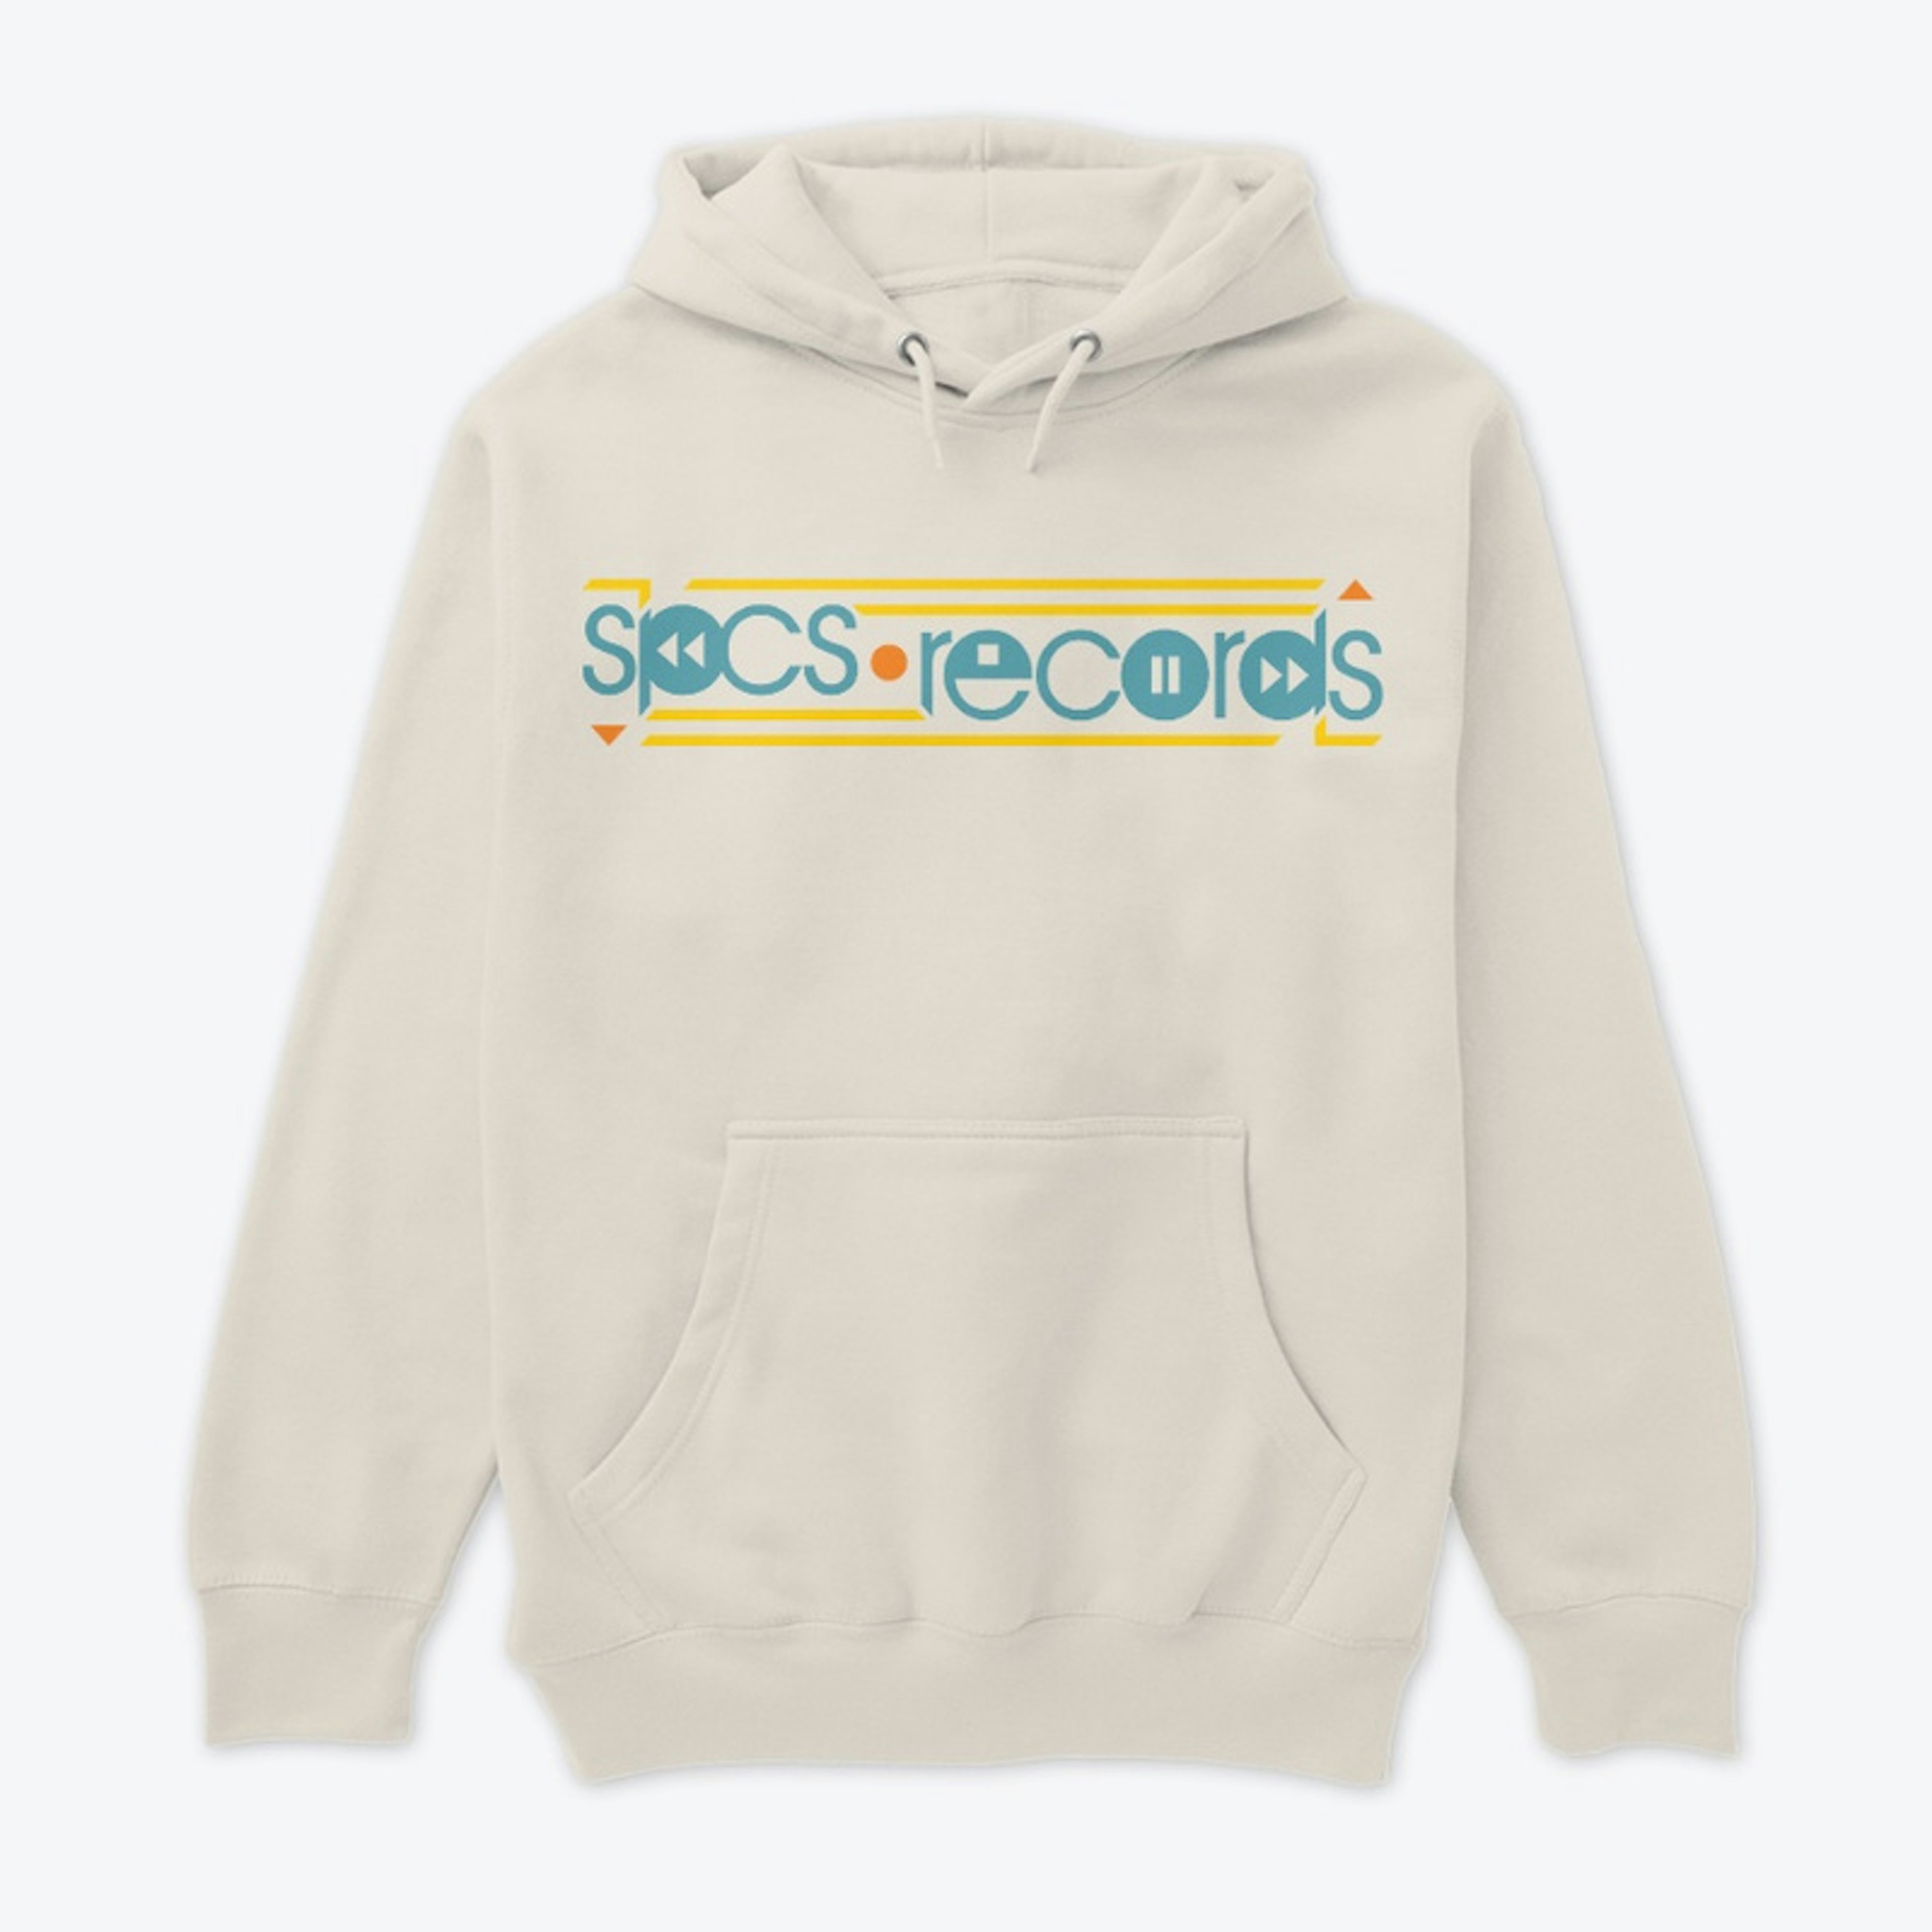 SPCS Records Premium Pullover